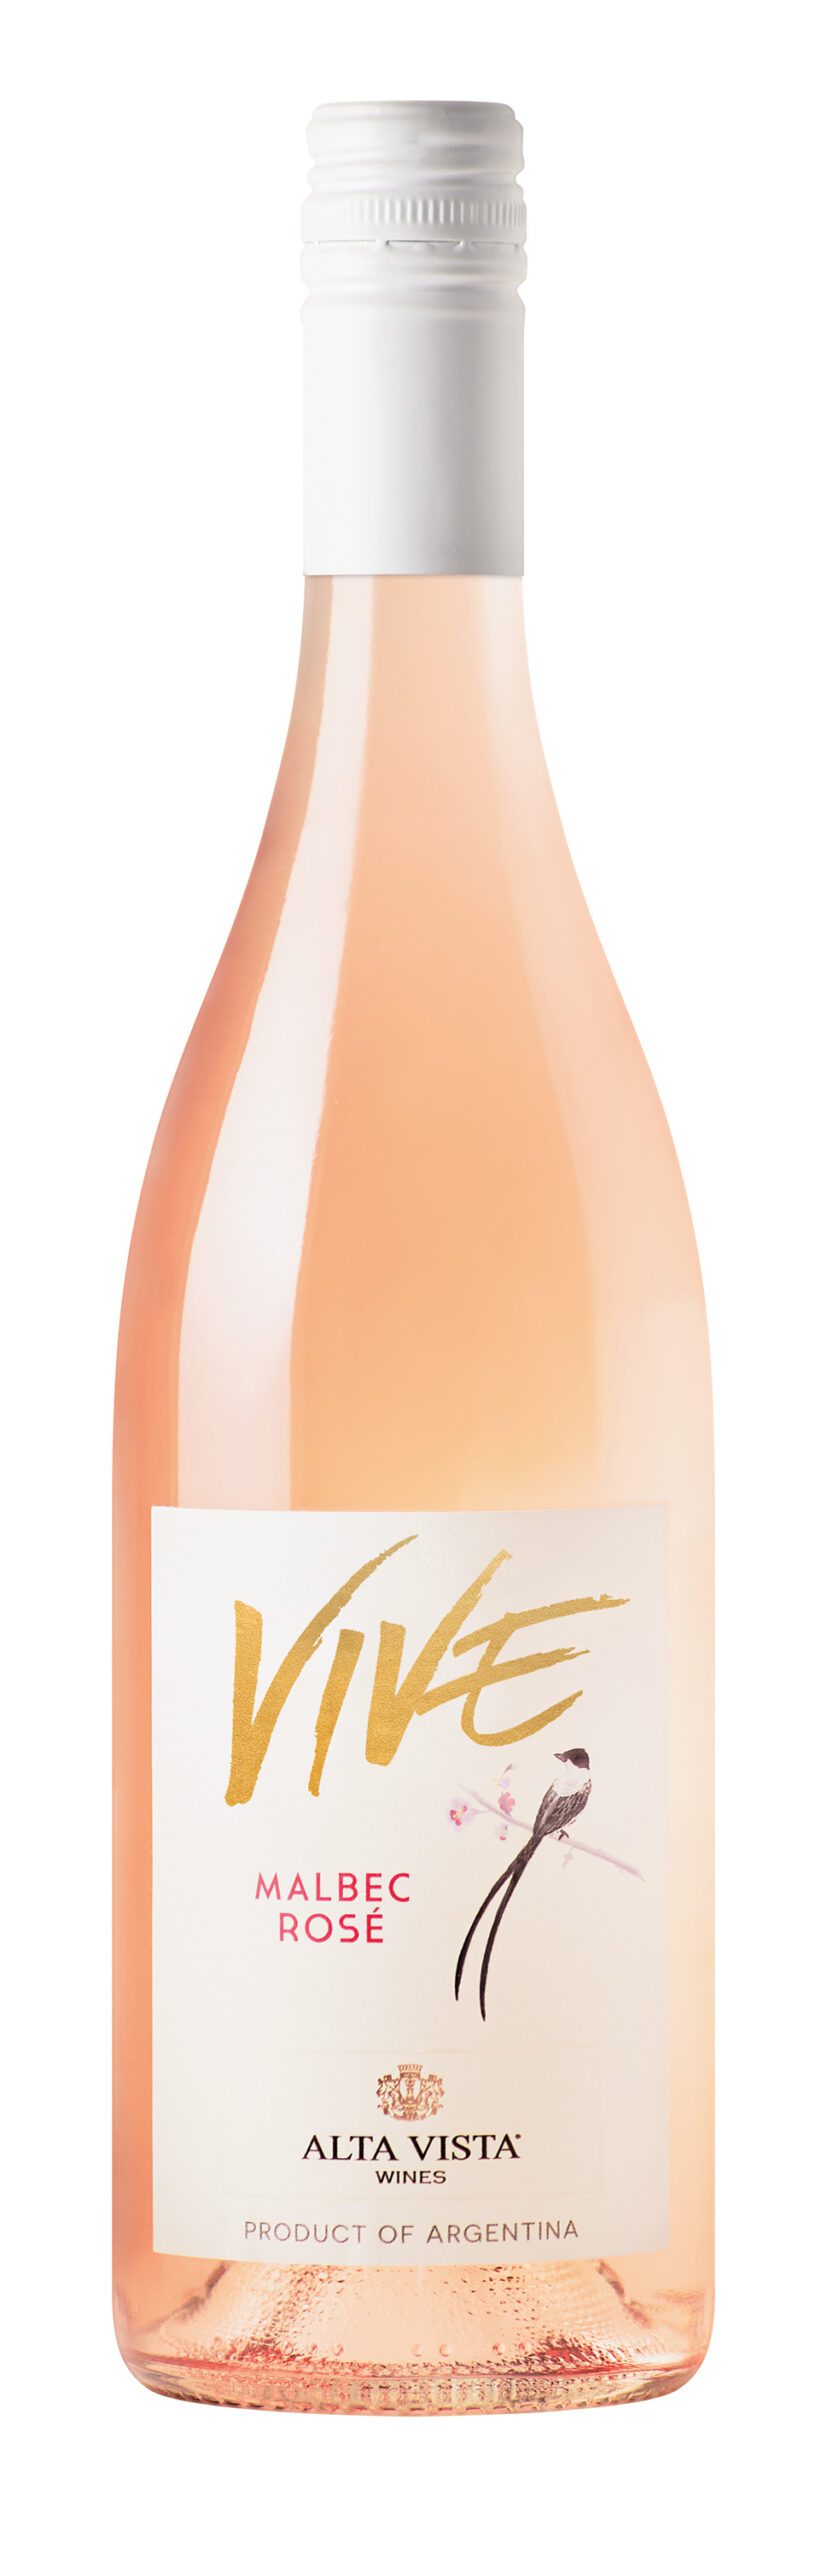 Bottle of Alta Vista Vive Rose